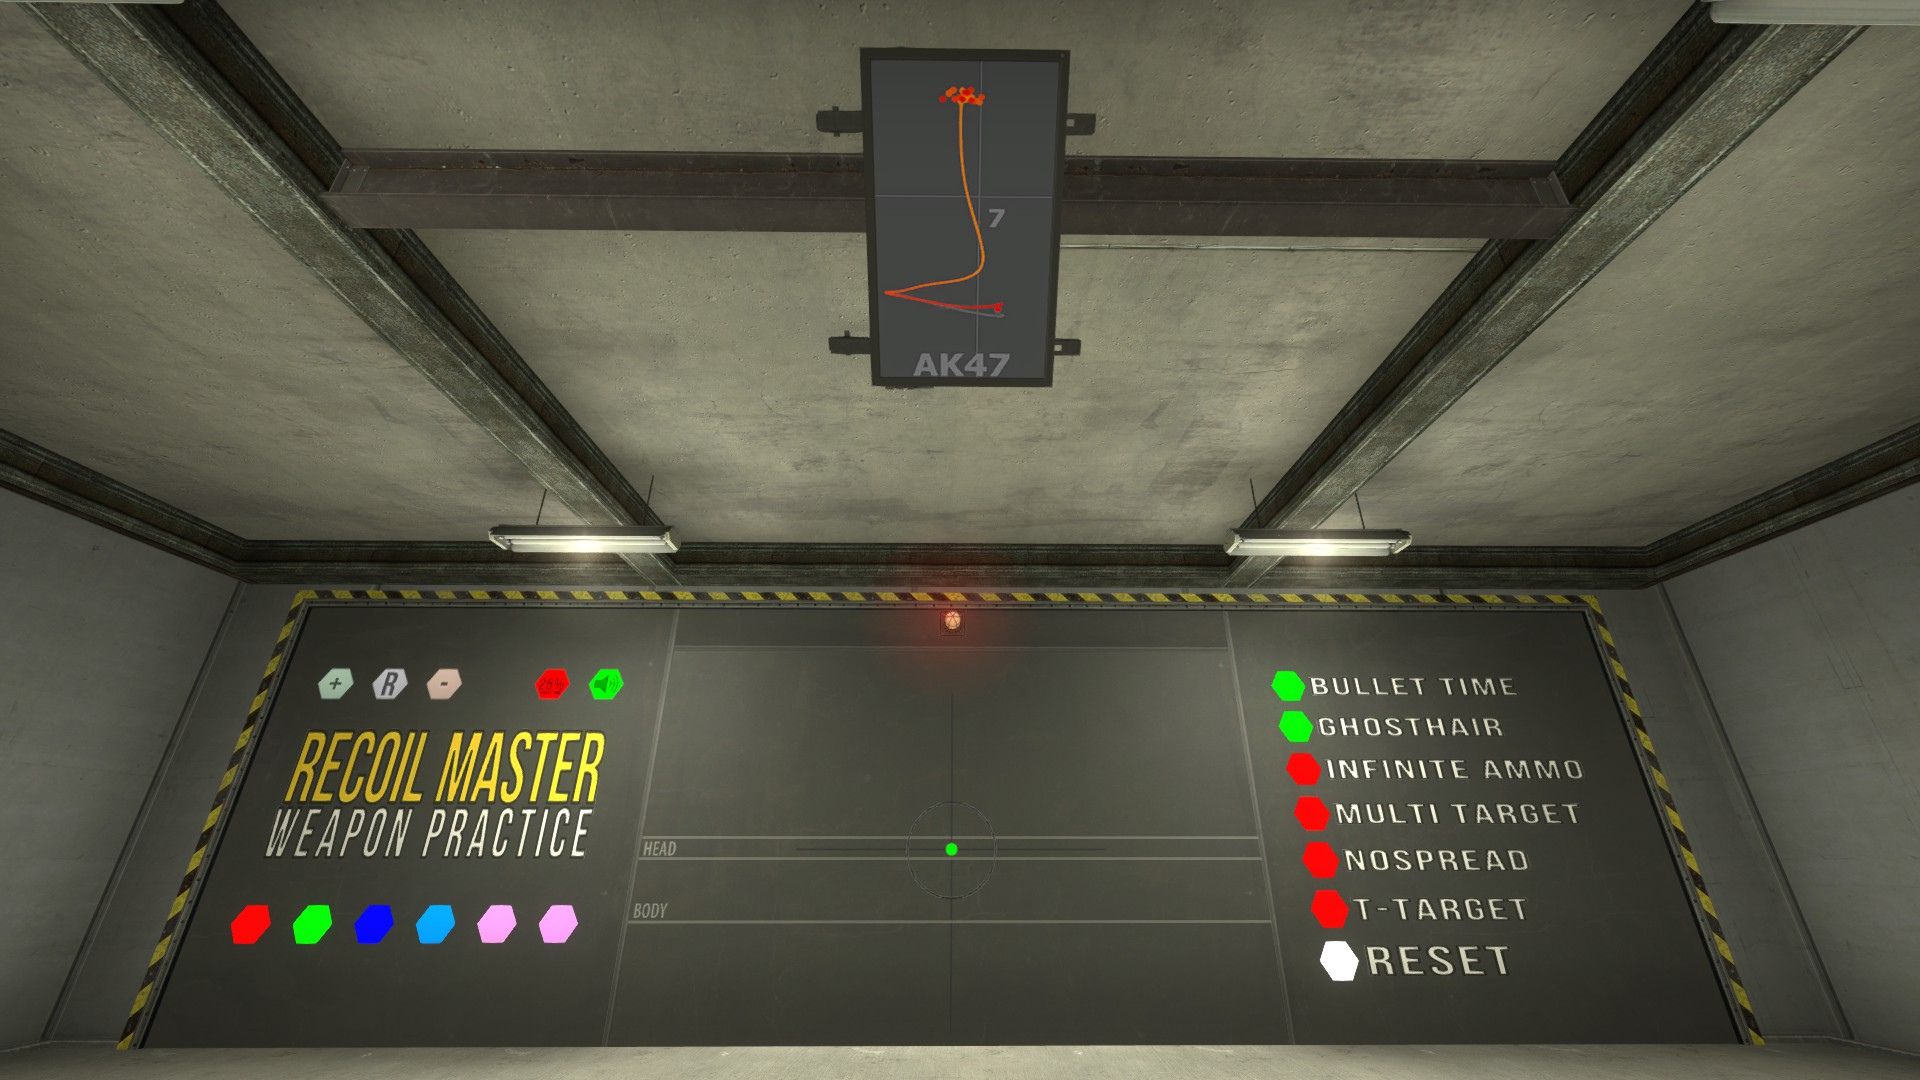 Counter-Strike 2 lebih baik dengan follow recoil - inilah alasannya: Target range dari game Valve FPS Counter-Strike